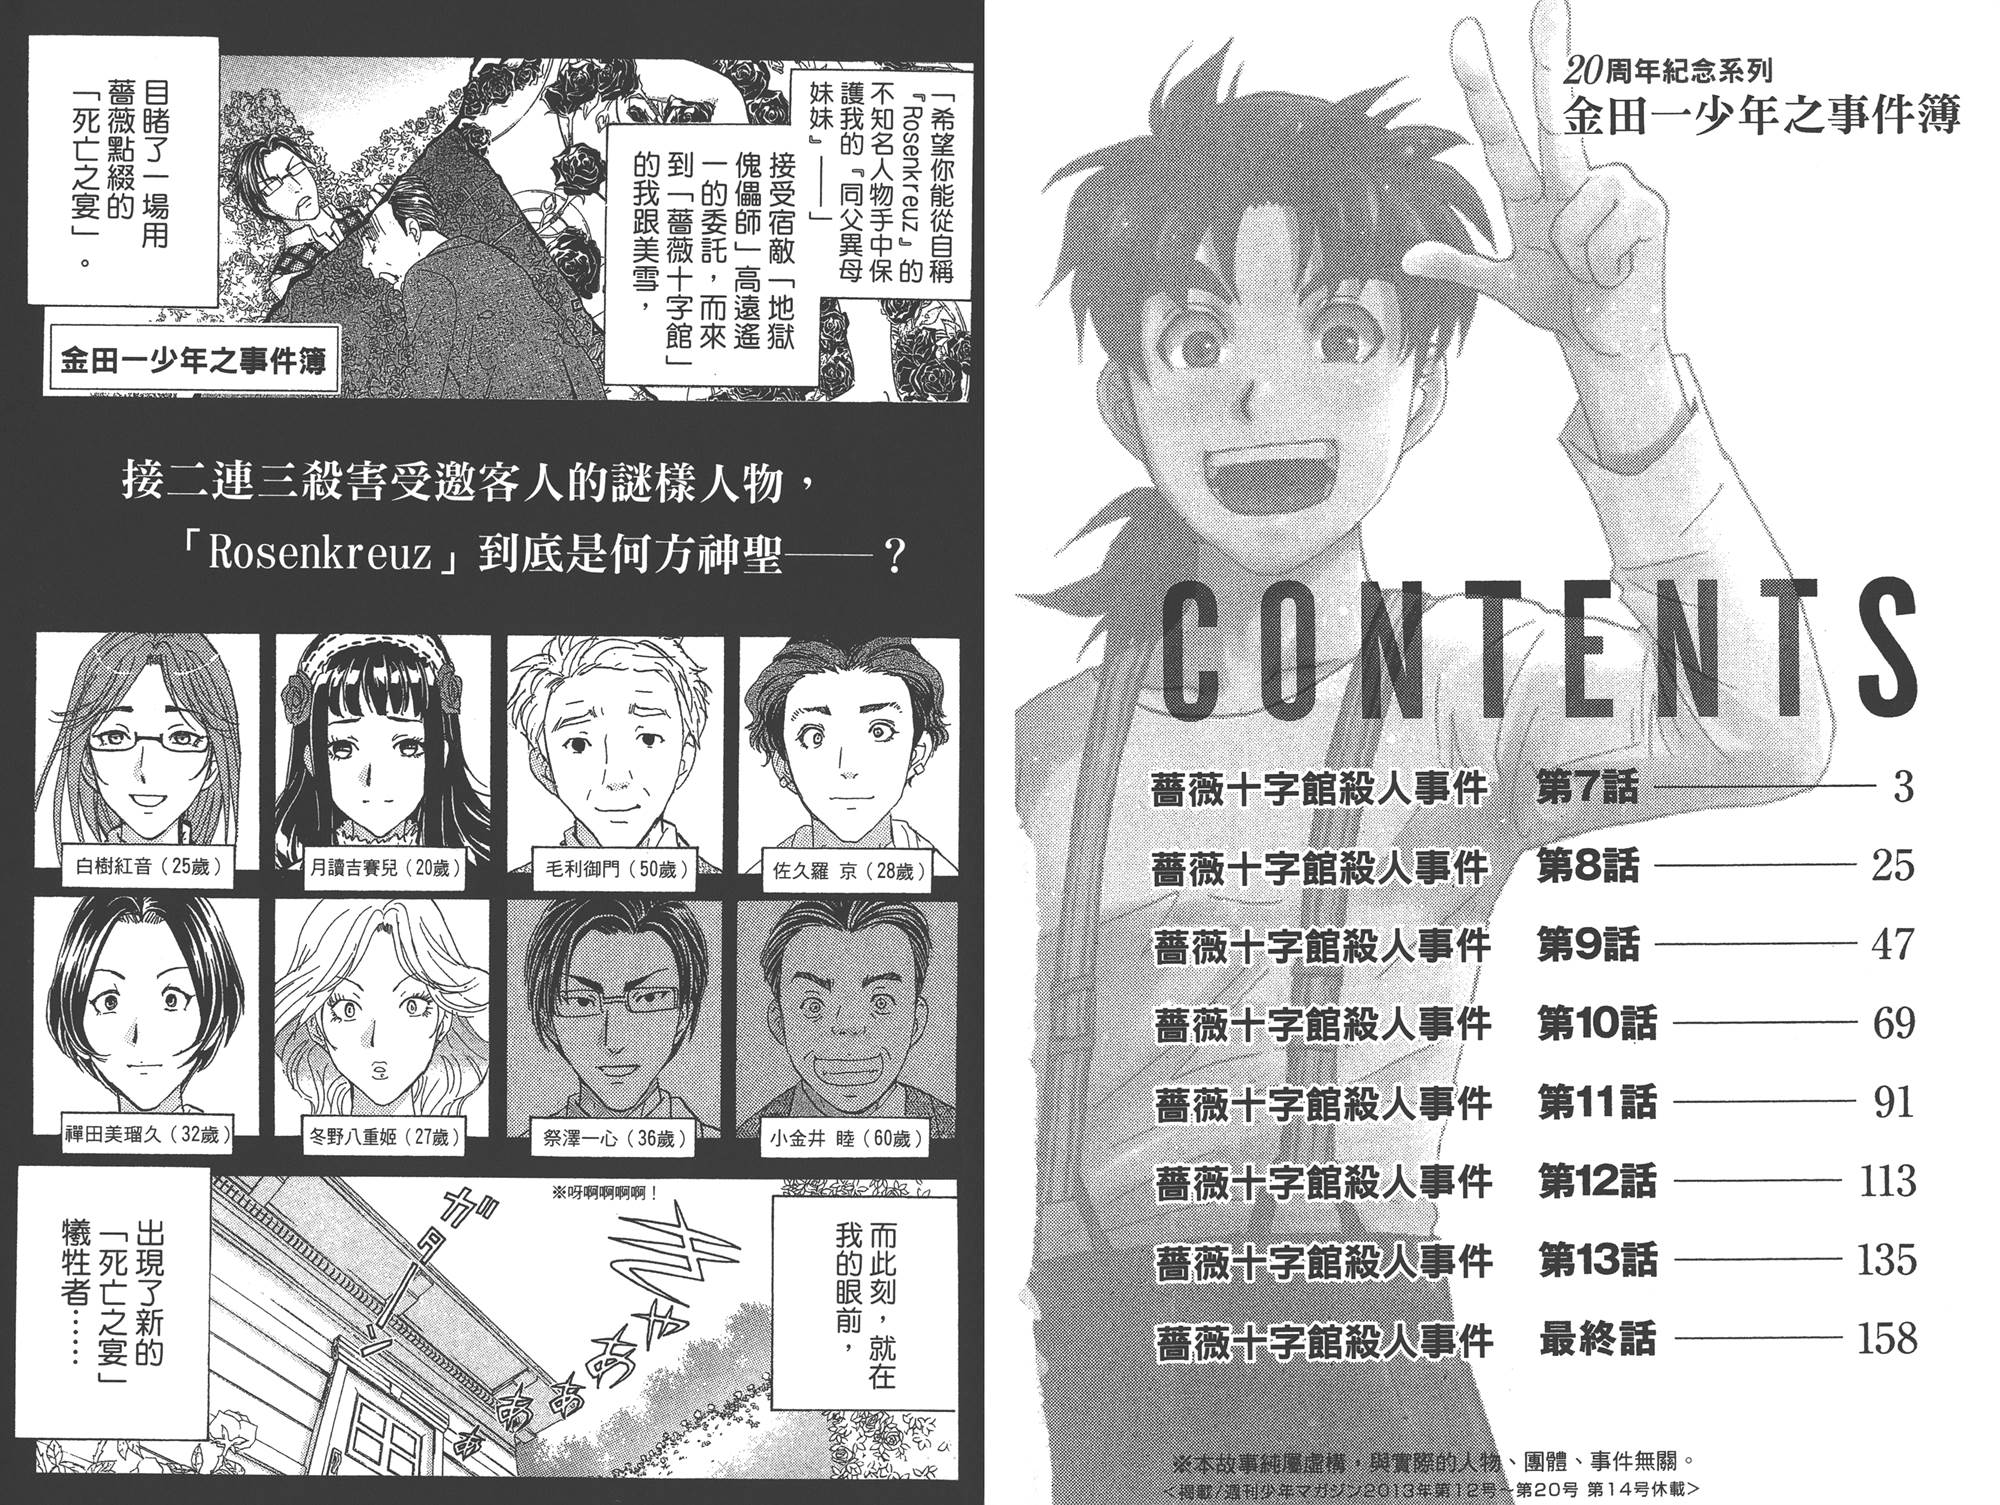 金田一少年之事件簿 周年紀念5卷 漫畫線上看 動漫戲說 Acgn Cc